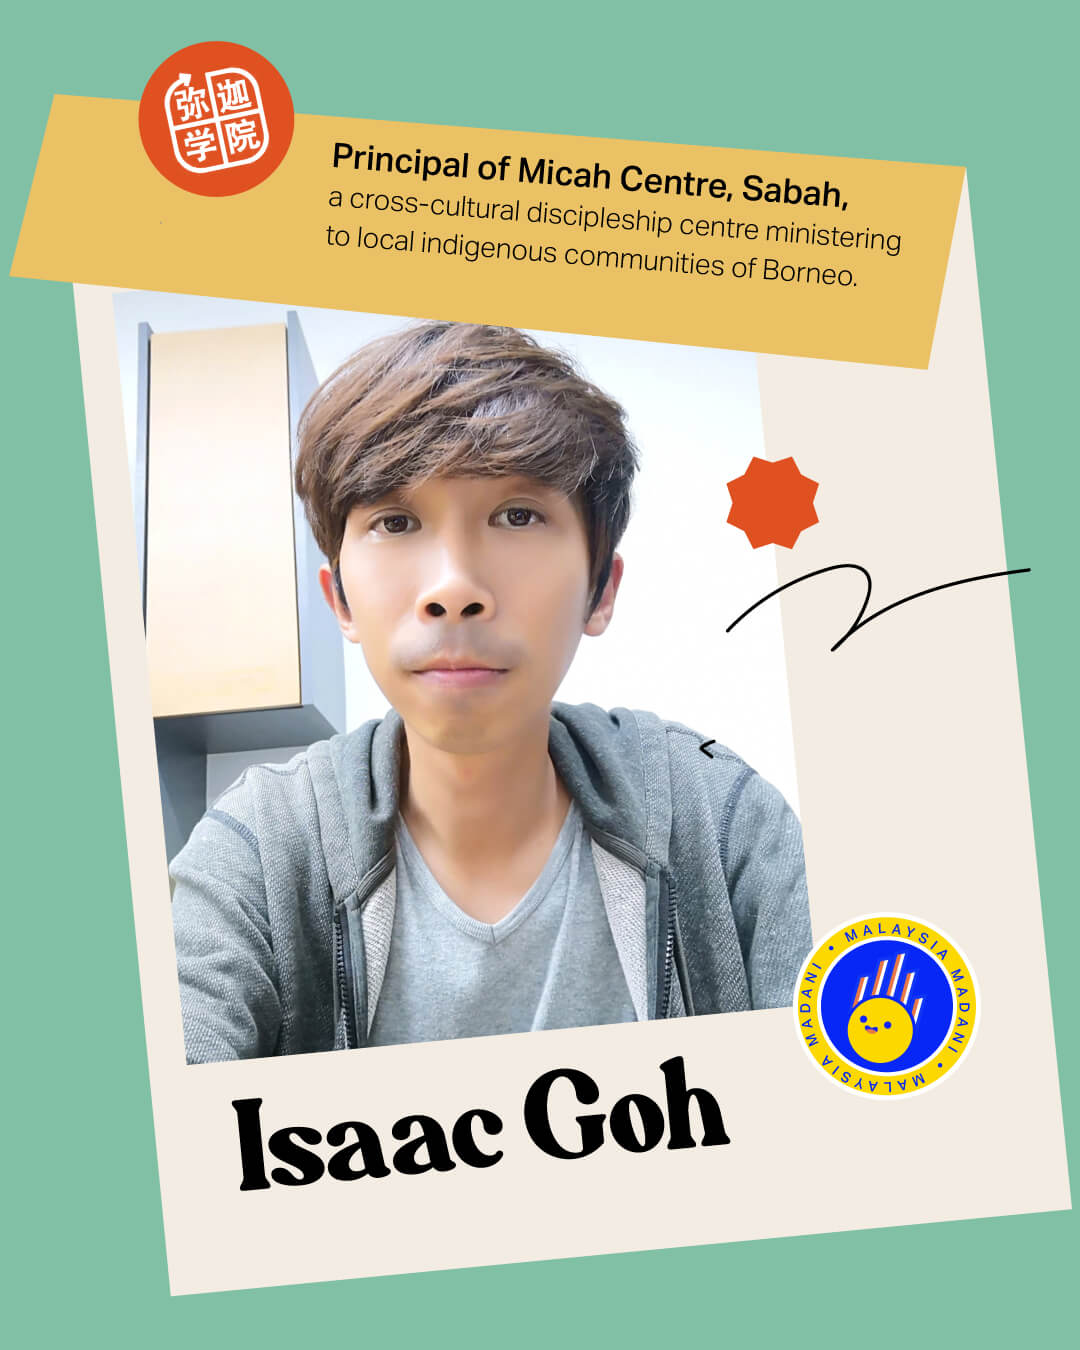 Isaac Goh, Principal of Micah Centre, Sabah